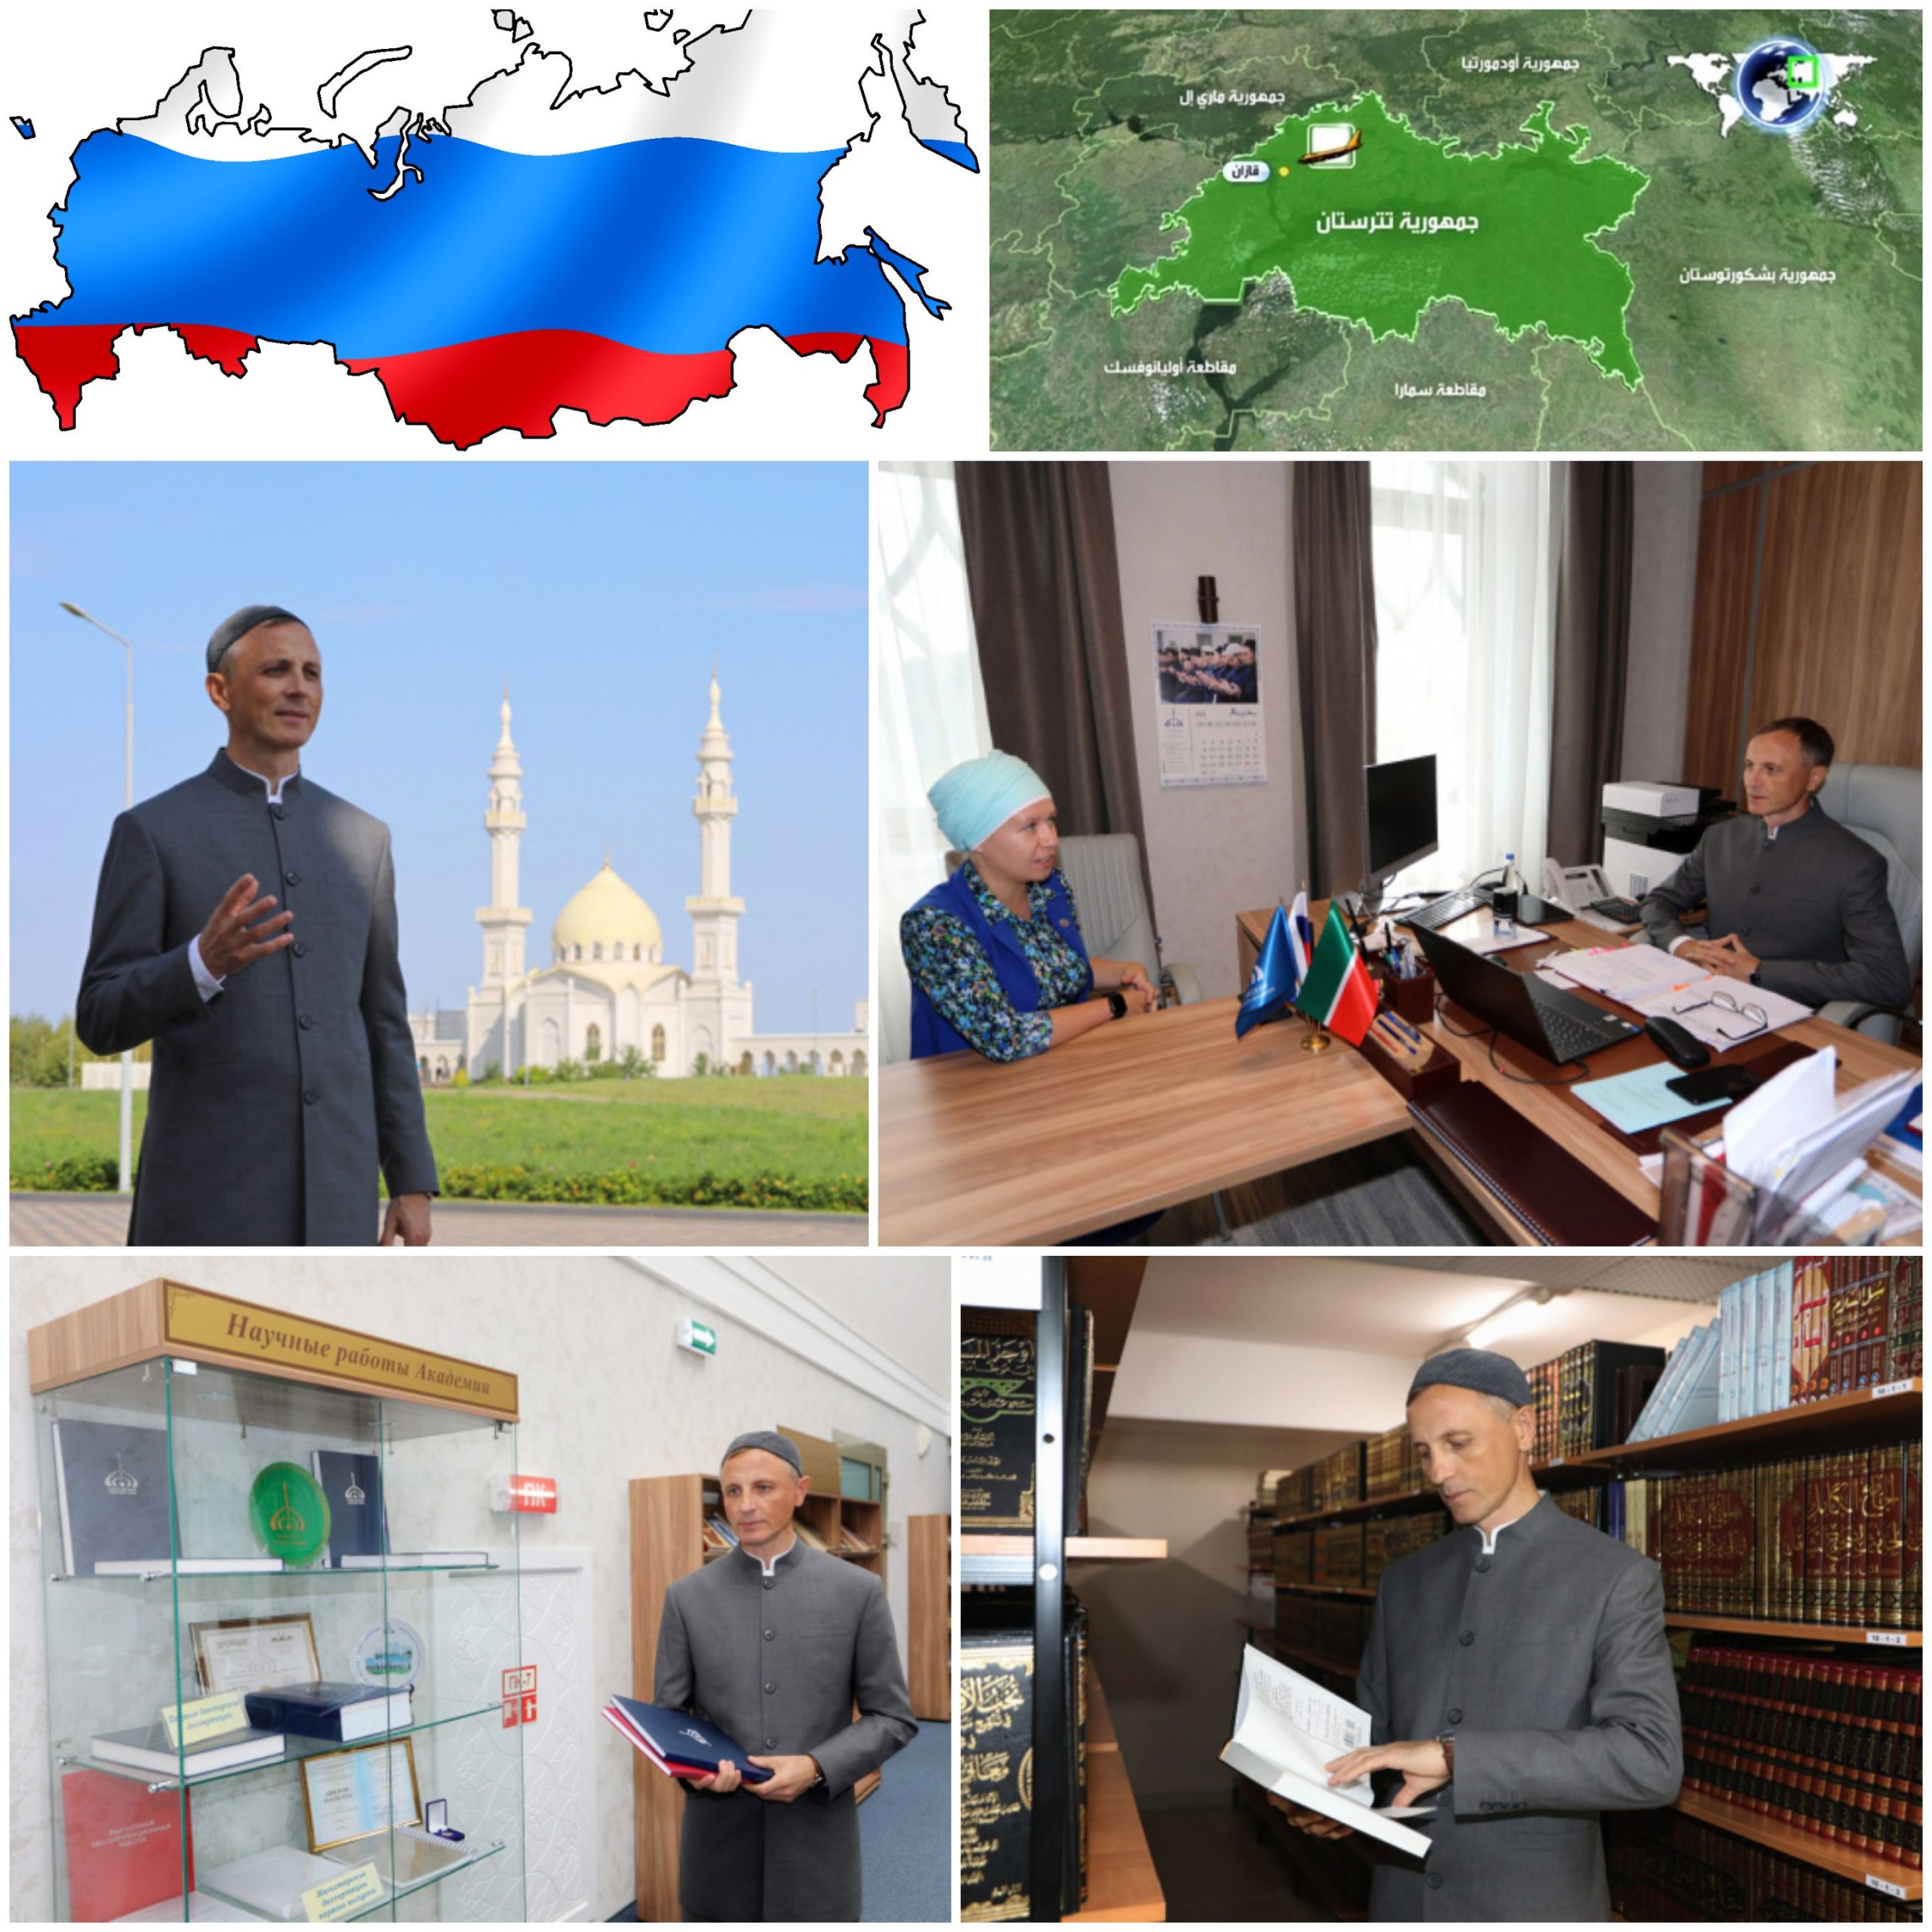 تعد "الأكاديمية الإسلامية البلغارية" أول مؤسسة تعليمية إسلامية في روسيا للمراحل الدراسية ما بعد الجامعة